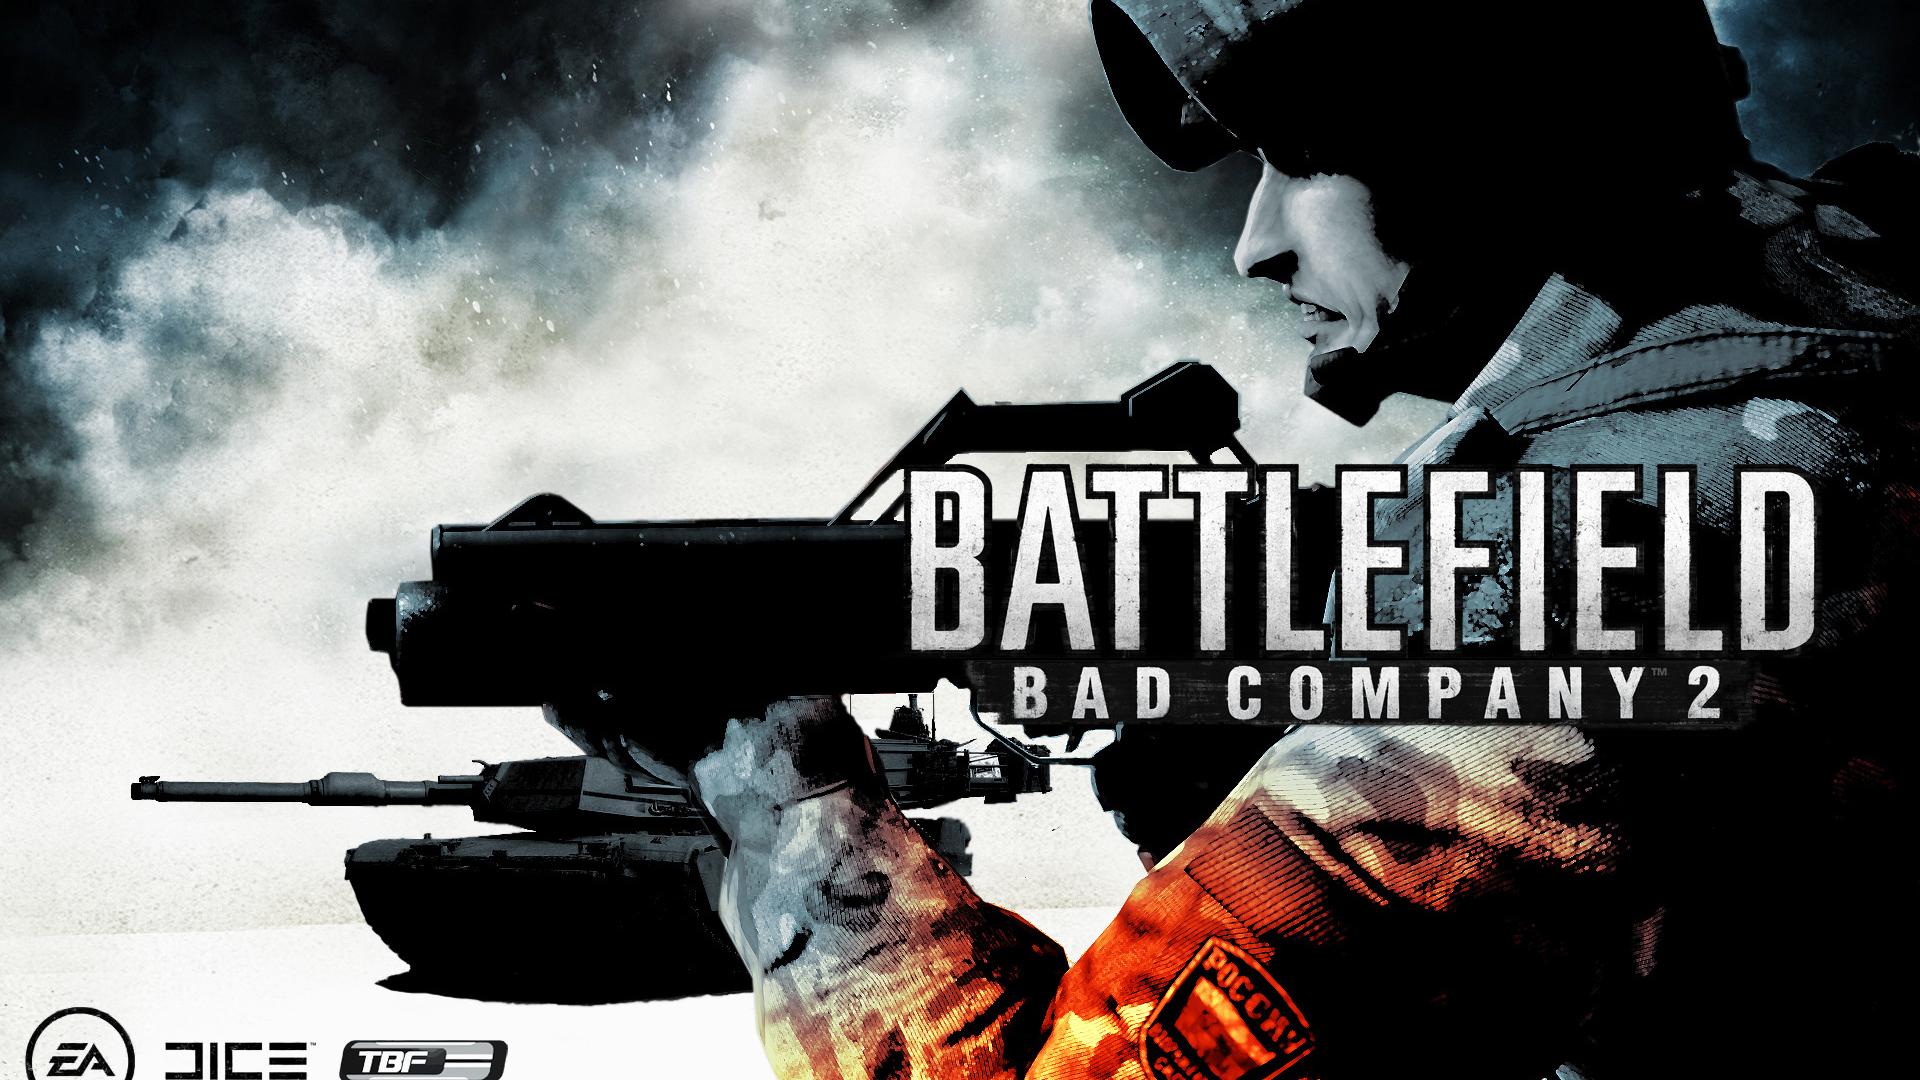 Battlefield bad company 2 Wallpaper 5. Games wallpaper HD